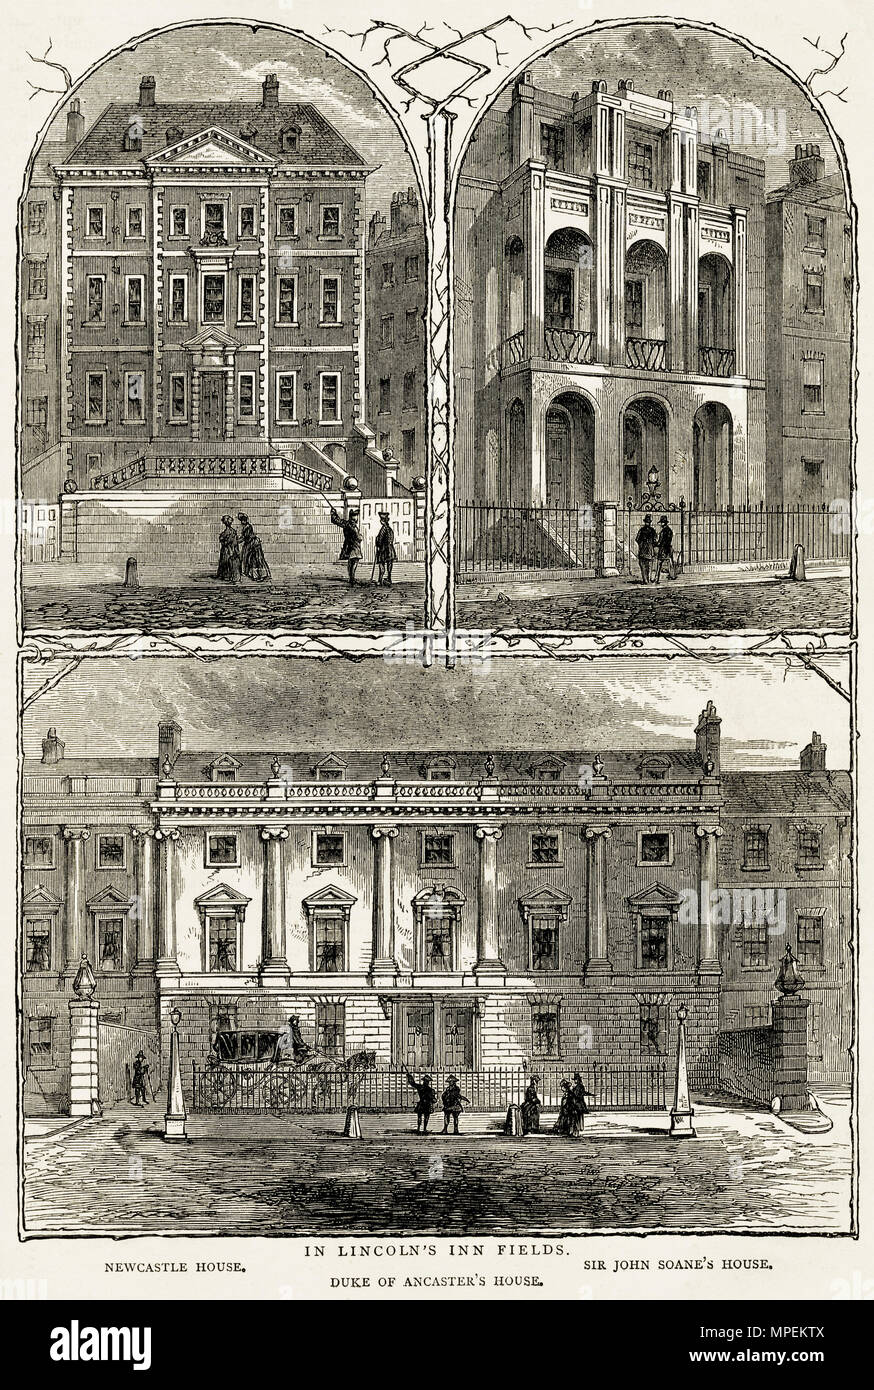 Grand maisons de Lincoln's Inn Fields London England UK, maison de Newcastle, Sir John Soane's House & Duc d'Ancaster's House. 19ème siècle gravure victorienne circa 1878 Banque D'Images